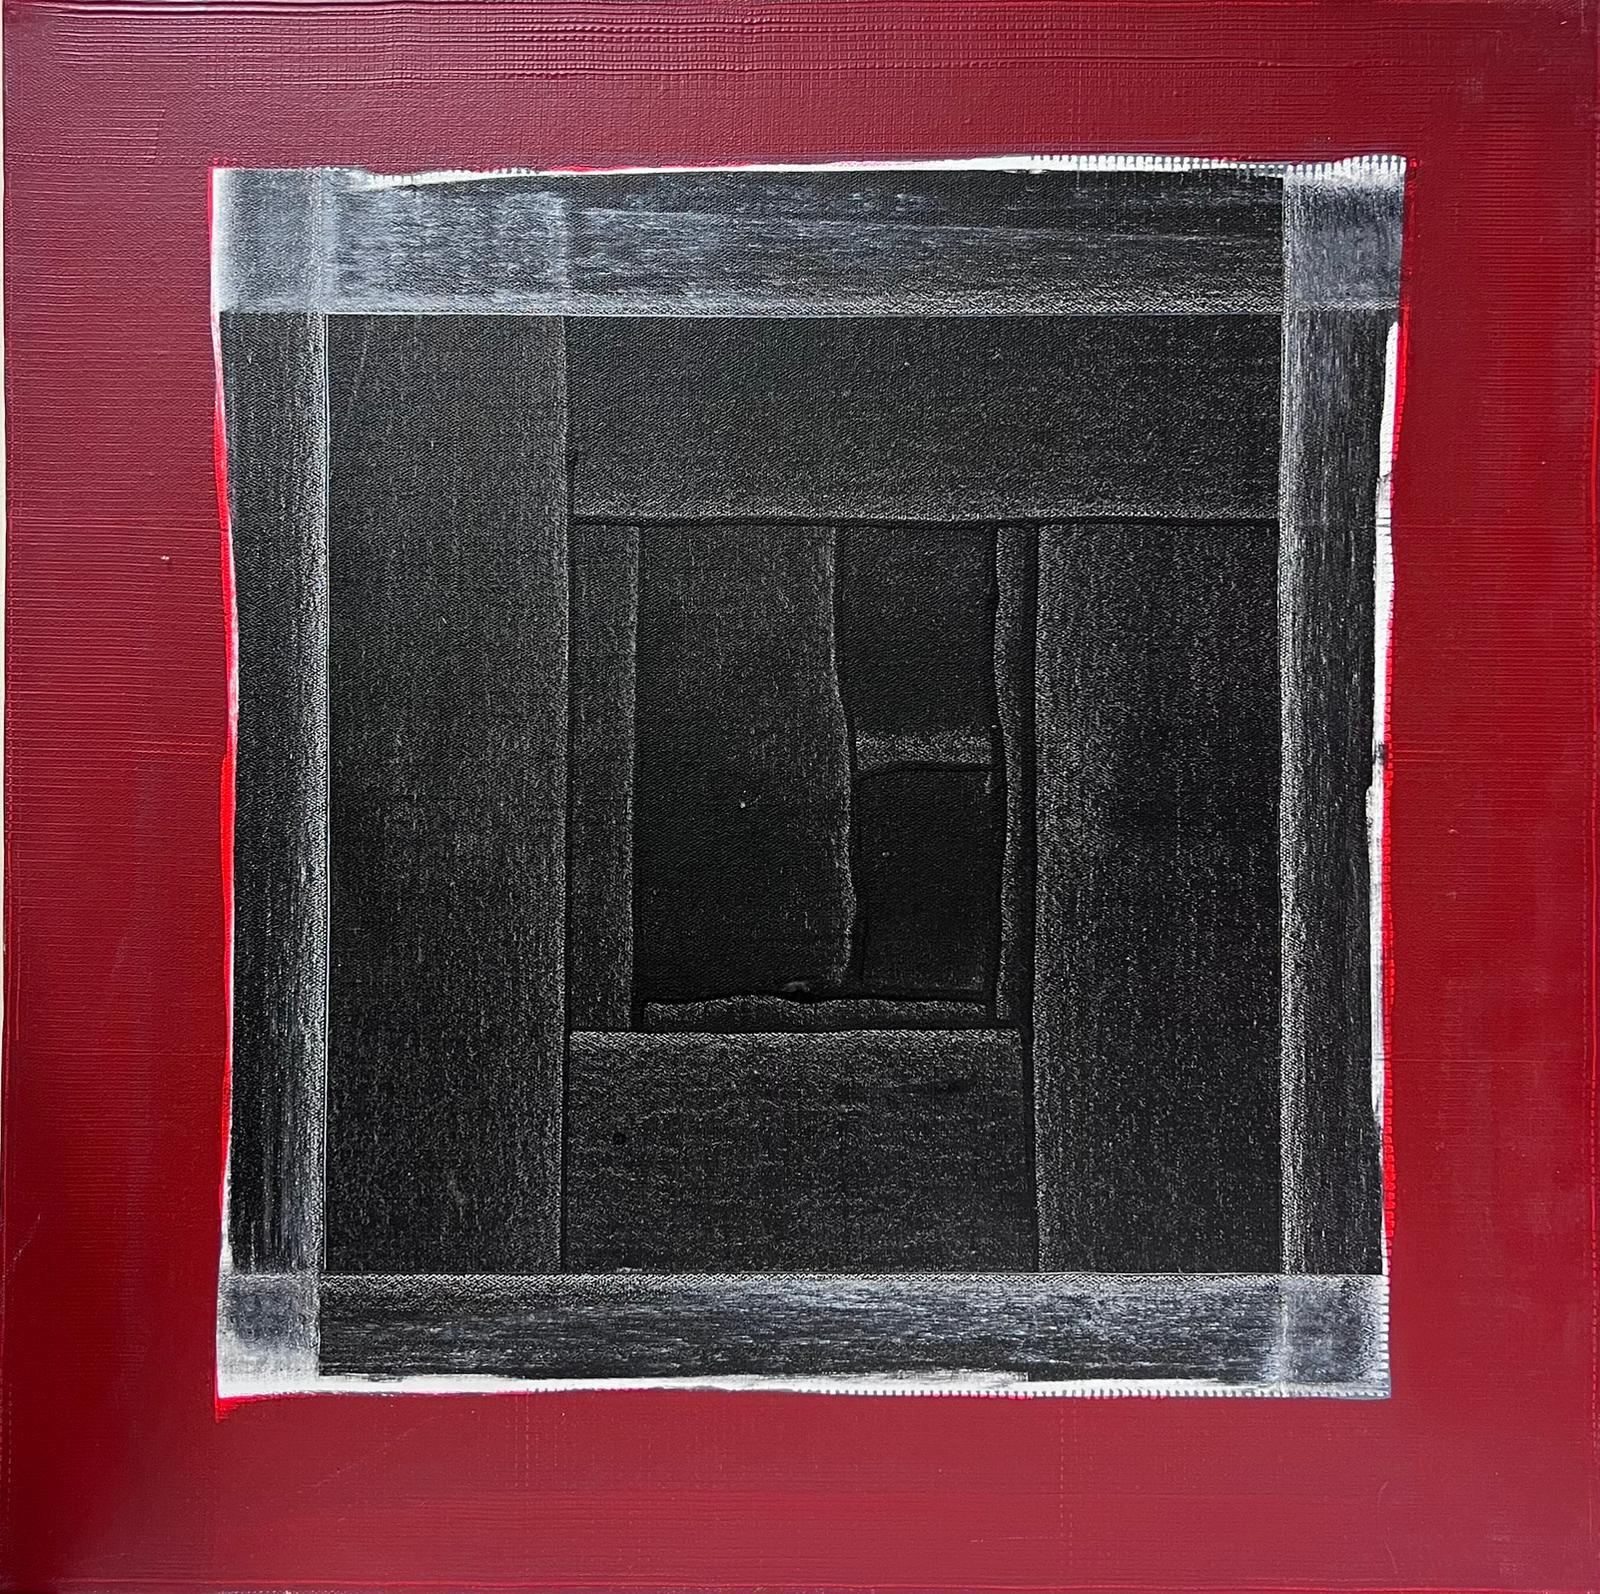 Abstract Painting Jacques Coulais (1955-2011) - Peinture abstraite expressionniste française, noir et rouge, grande peinture originale